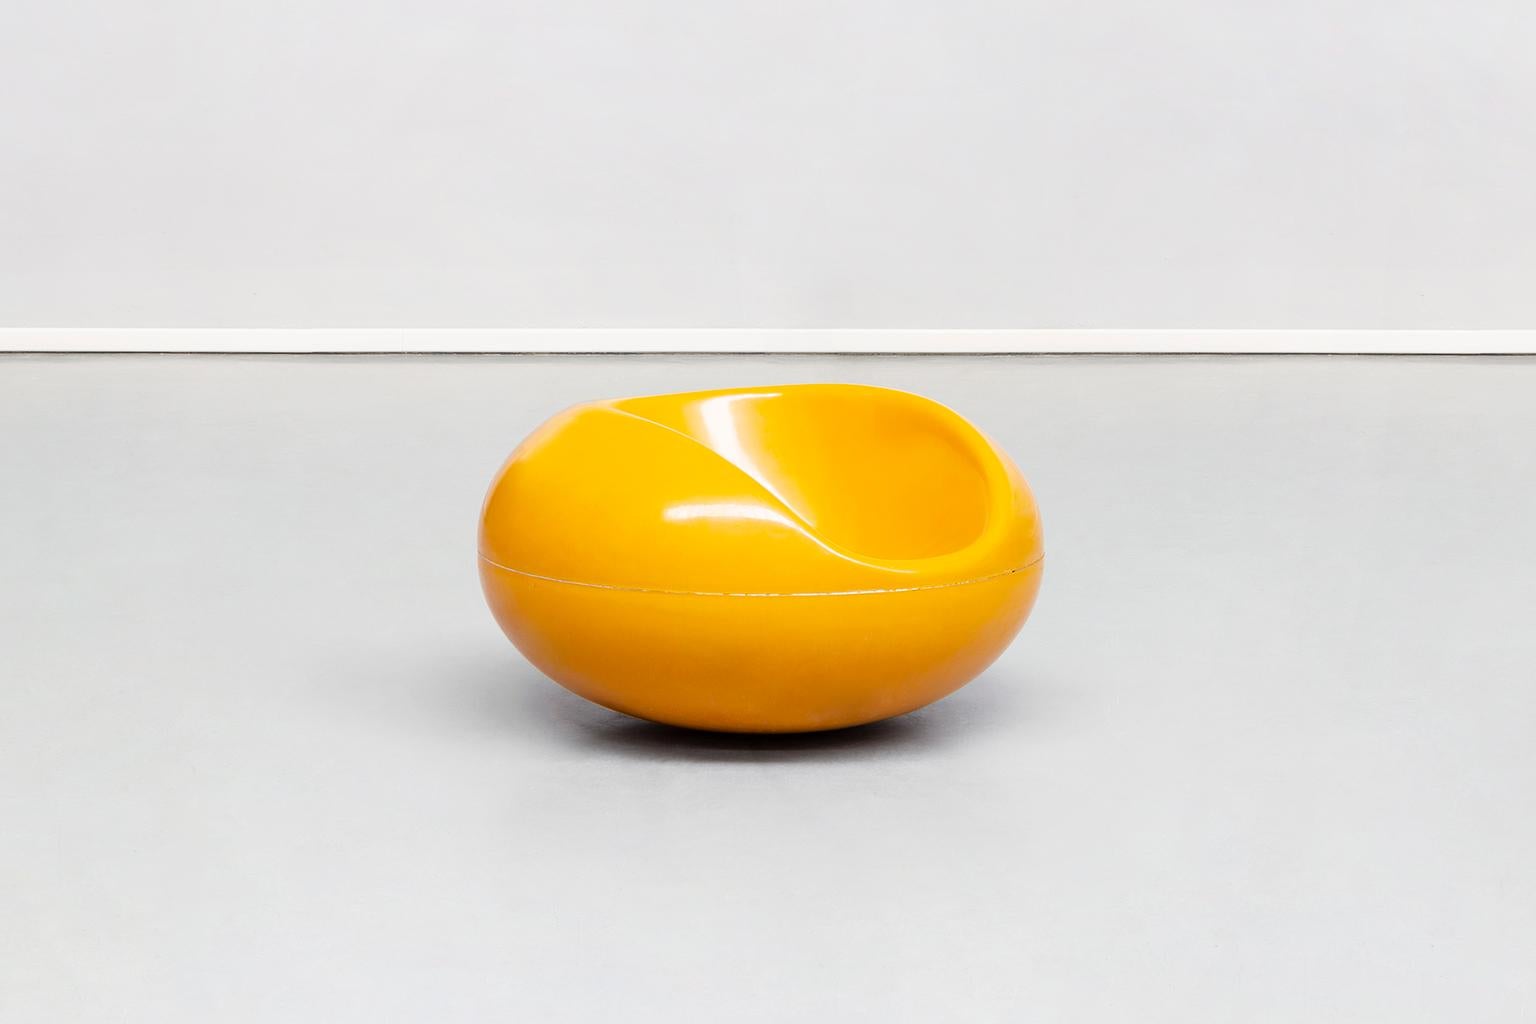 Fauteuils Pastille en fibre de verre jaune feu finlandais par Eero Aarnio pour Asko, 1967
Le fauteuil Pastille est plus une œuvre d'art qu'un simple fauteuil ou rocking-chair. Créé en 1967, il a une forme complètement décalée, comme une pastille ou